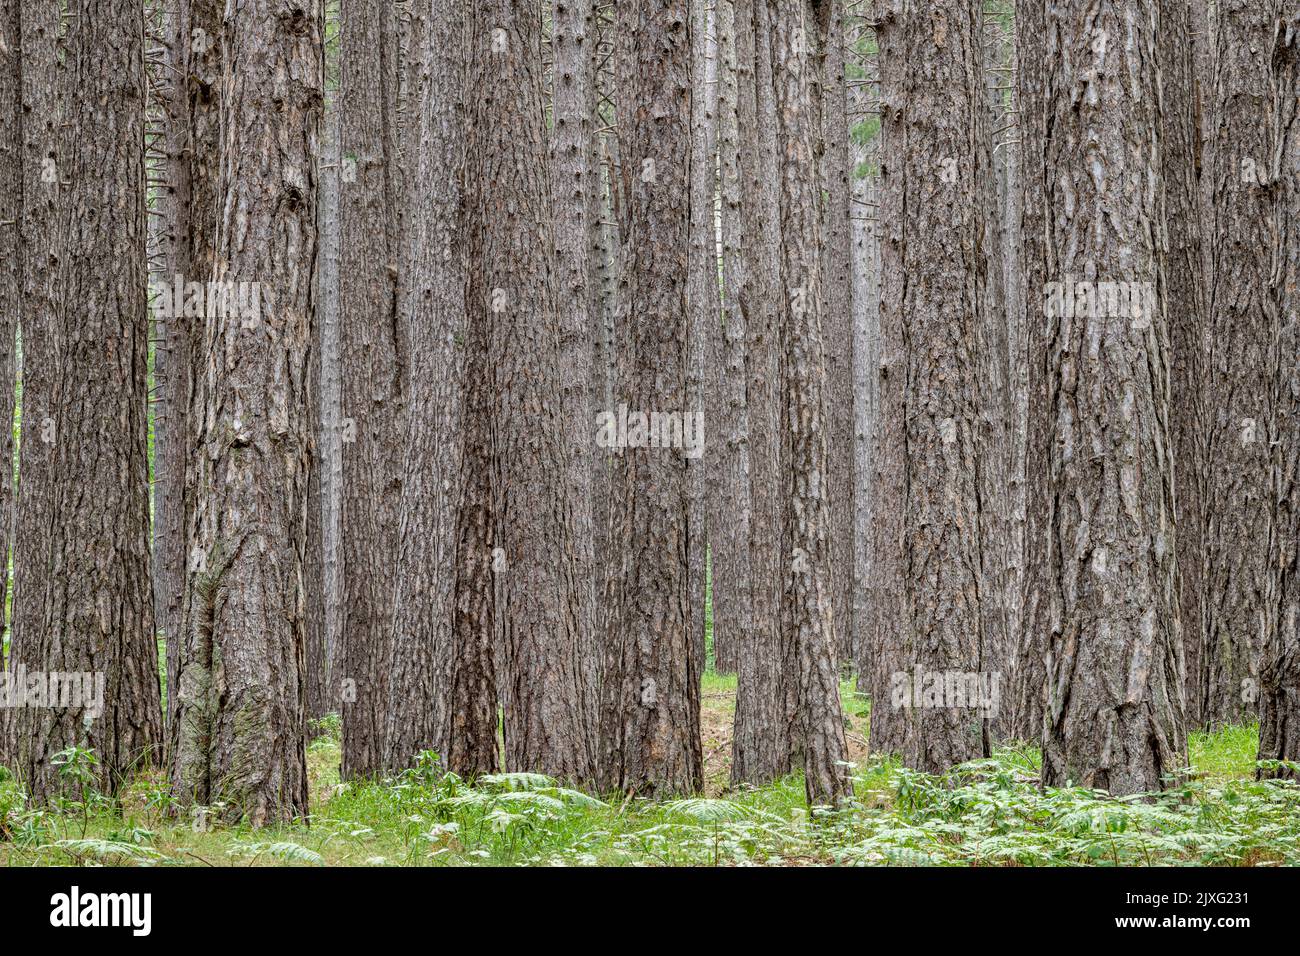 La forêt dense de pins de Ragabo sur les pentes de l'Etna, Sicile. Jusqu'à récemment, les arbres étaient taraudés pour leur résine, utilisée pour l'imperméabilisation Banque D'Images